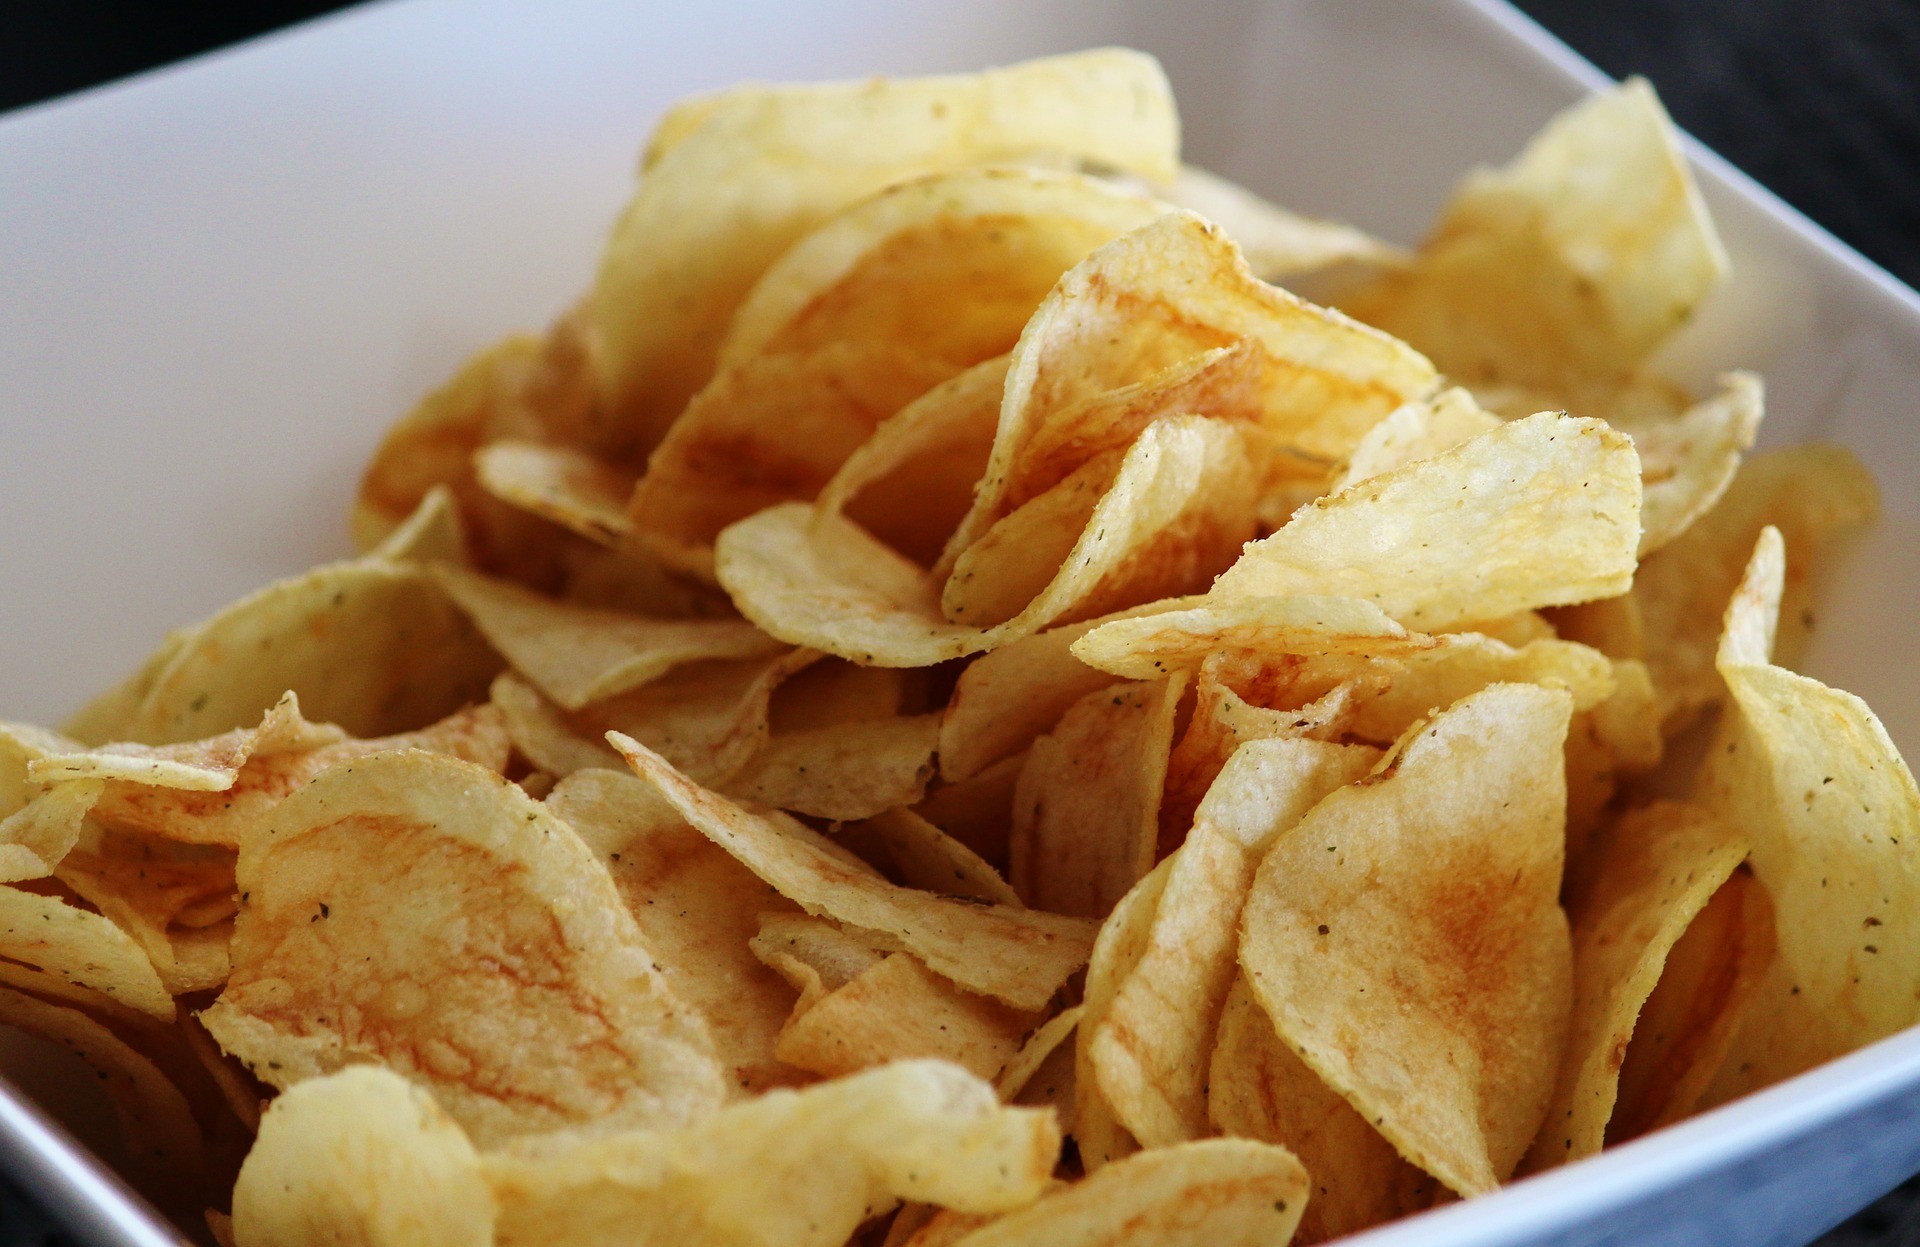 Comer apenas batata frita pode ser bem perigoso (Foto: Pixabay)